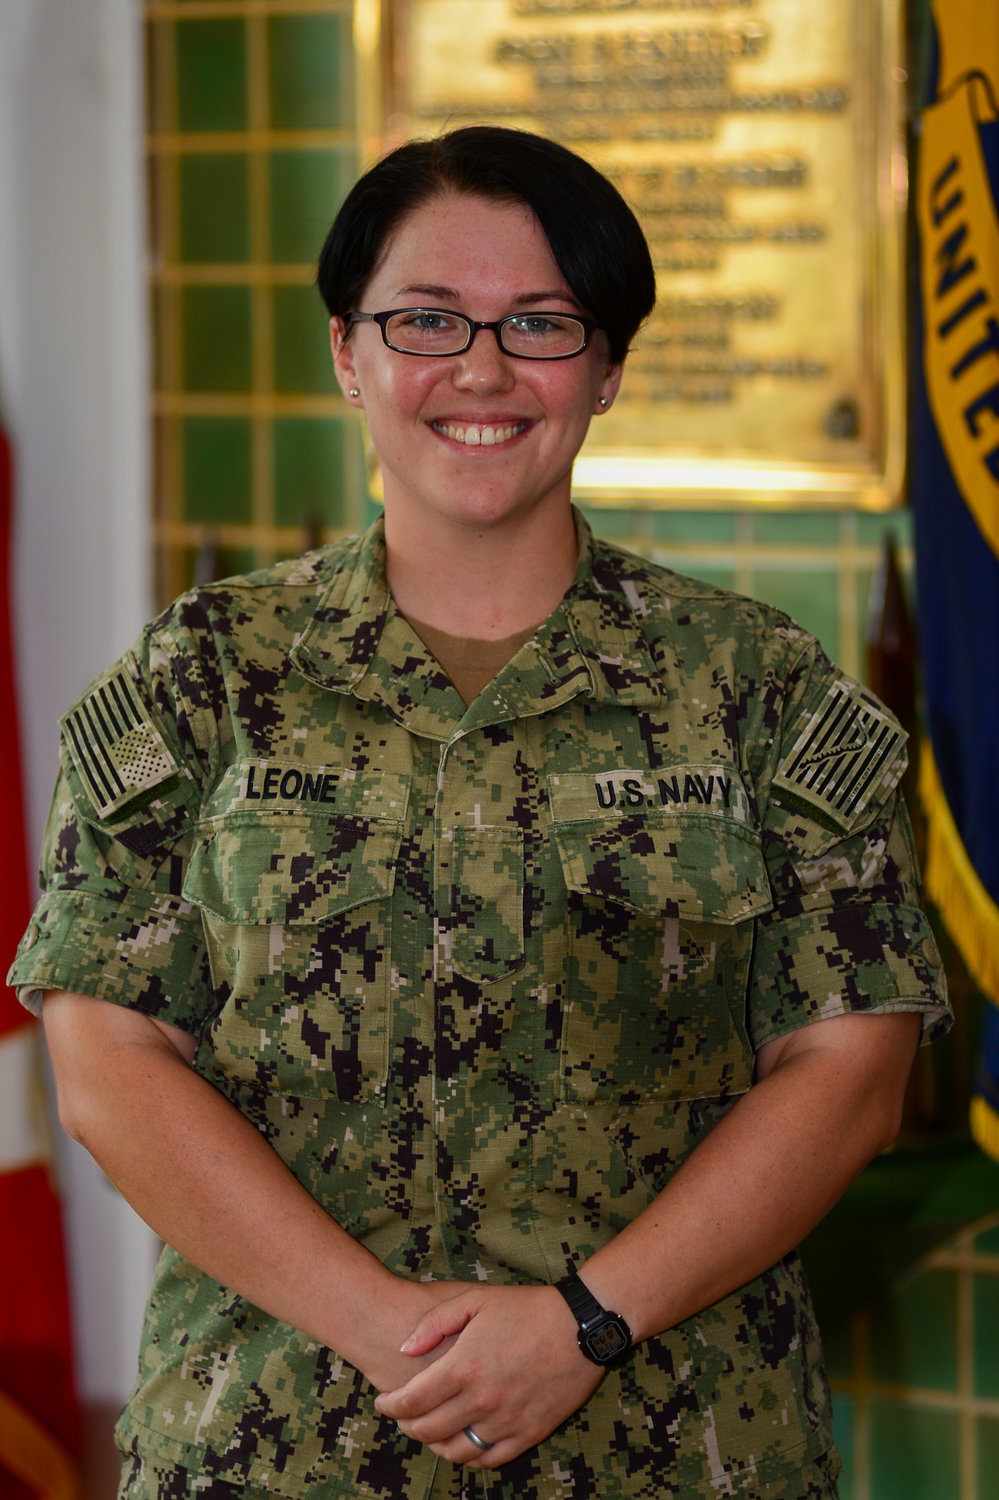 Seaman Gabrielle Leone